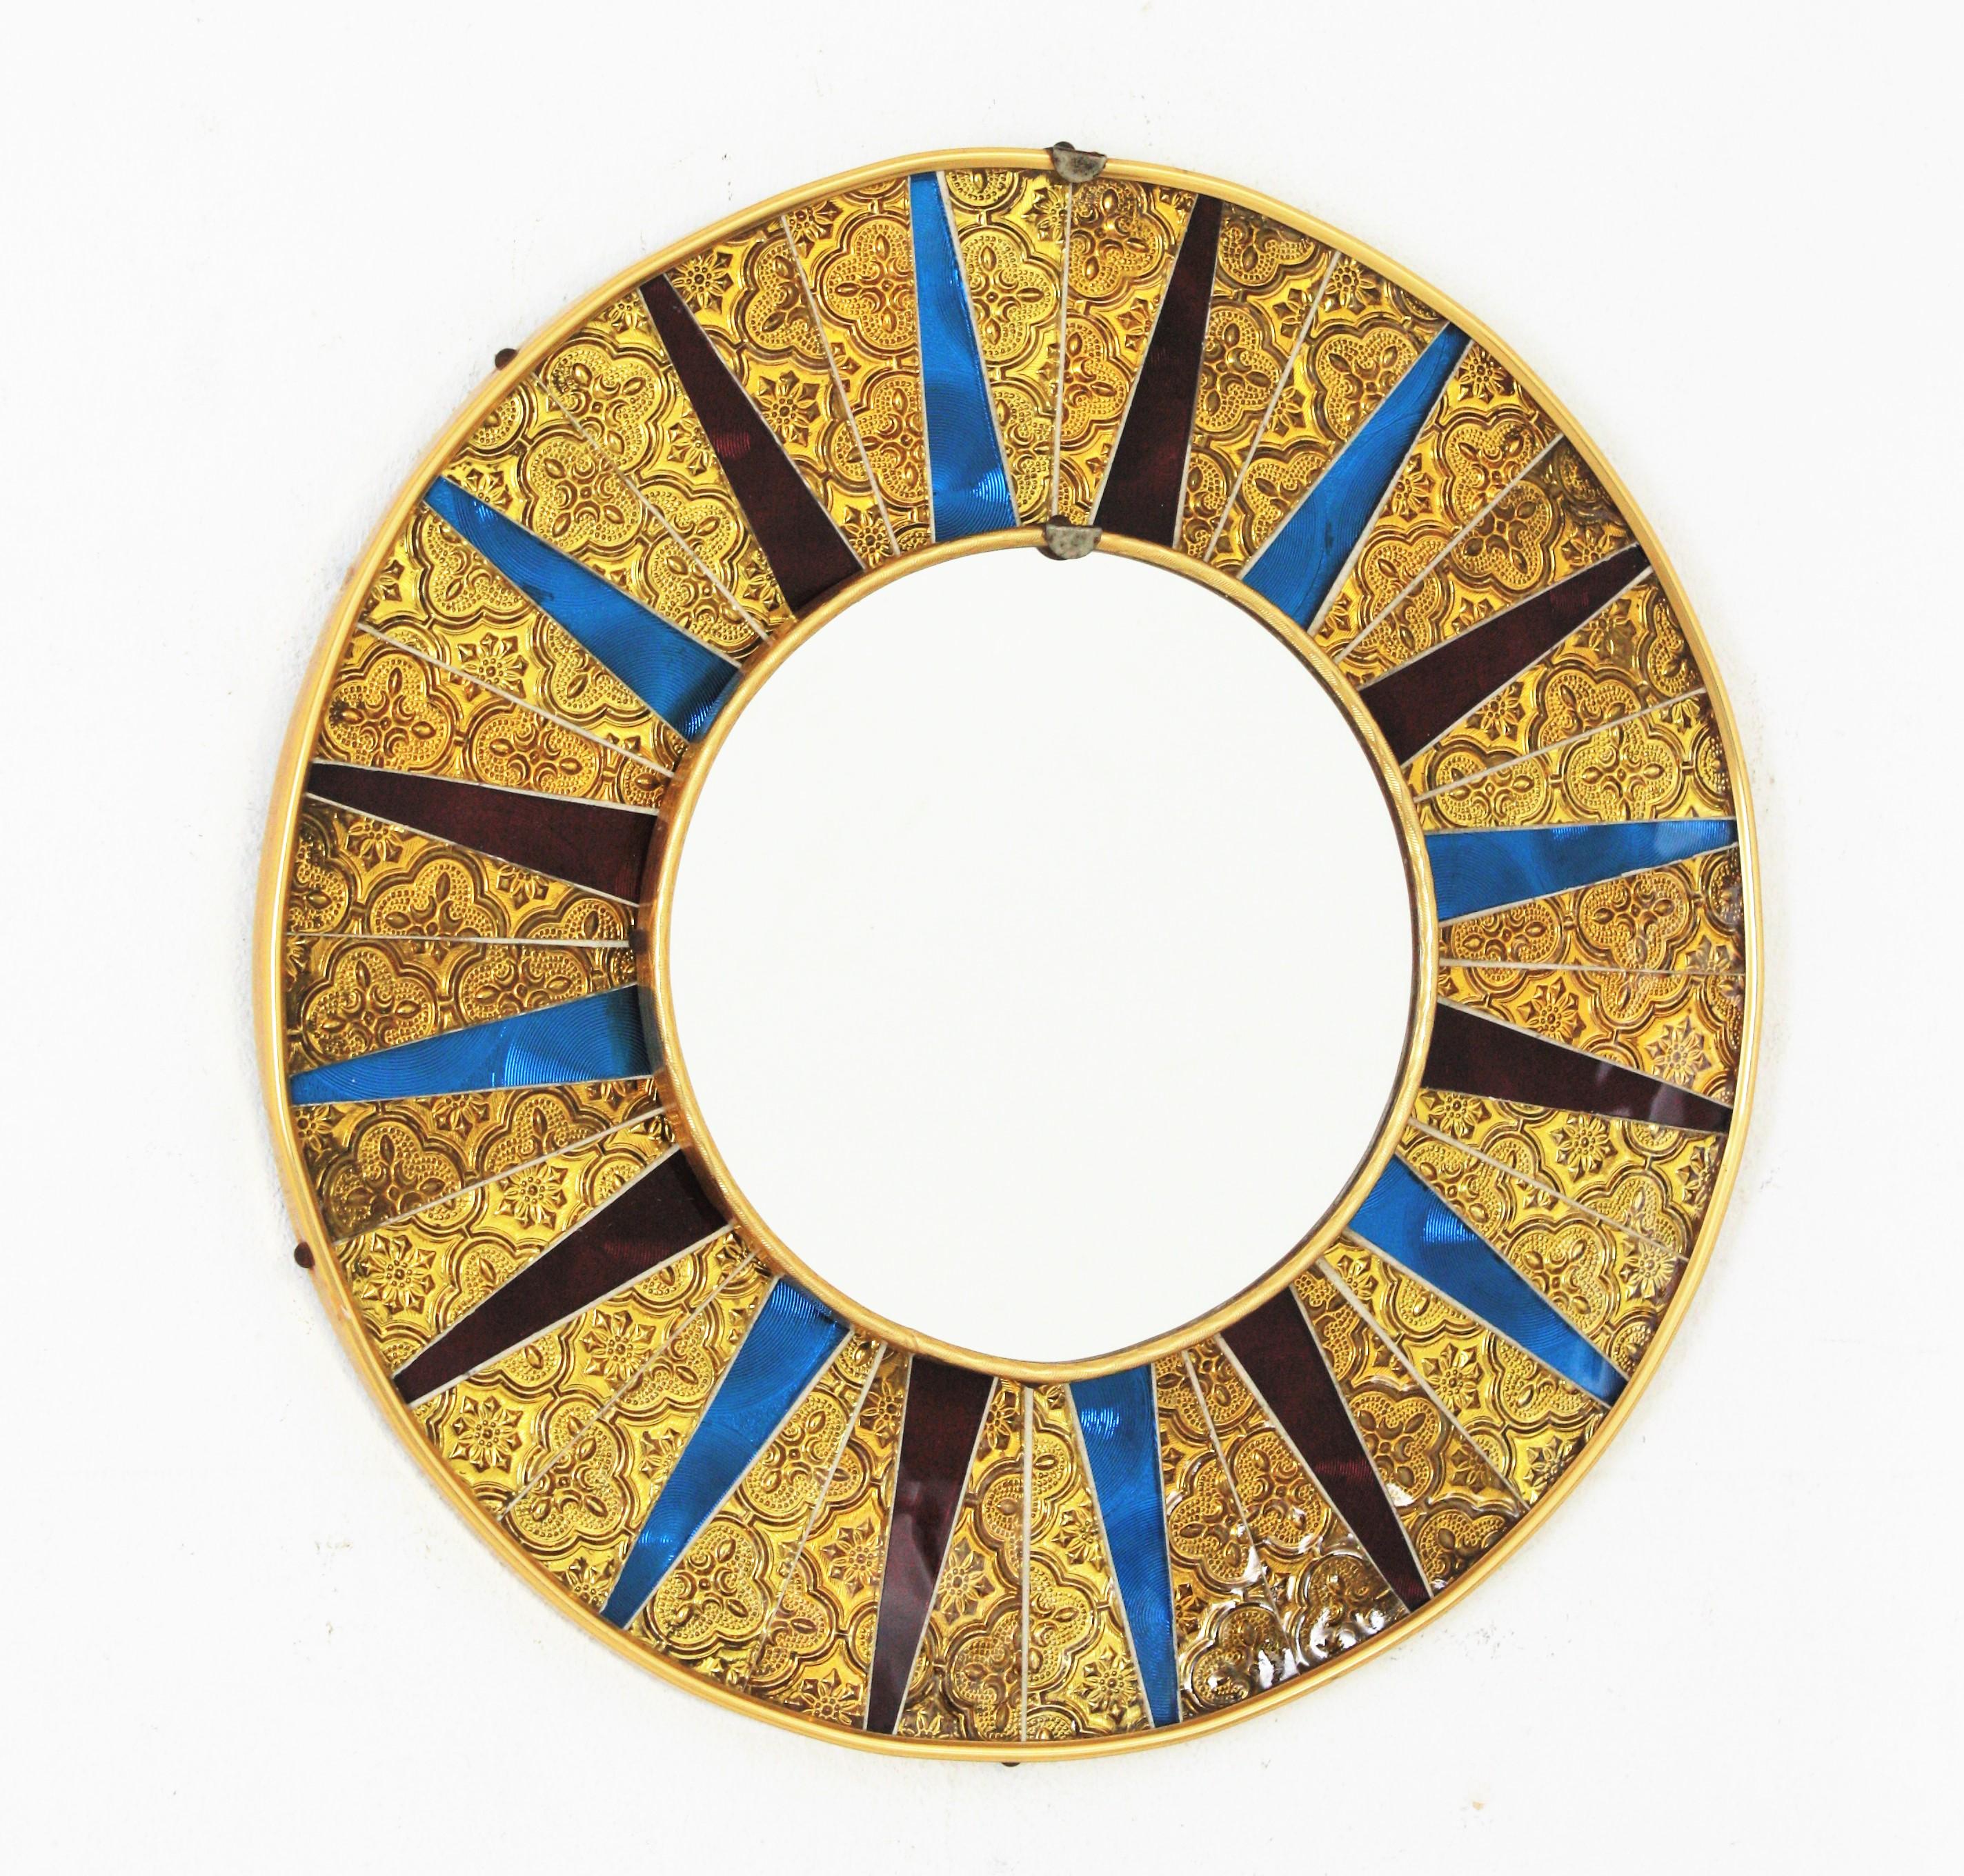 Texturiertes Glas Mosaik Runder Sonnenspiegel
Spanischer Mid-Century Modern Sonnenschliff Glasmosaik runder Spiegel. Spanien, 1950-1960er Jahre
Dieser Spiegel hat einen schönen runden Mosaik-Sunburst-Spiegel mit einem goldenen, strukturierten